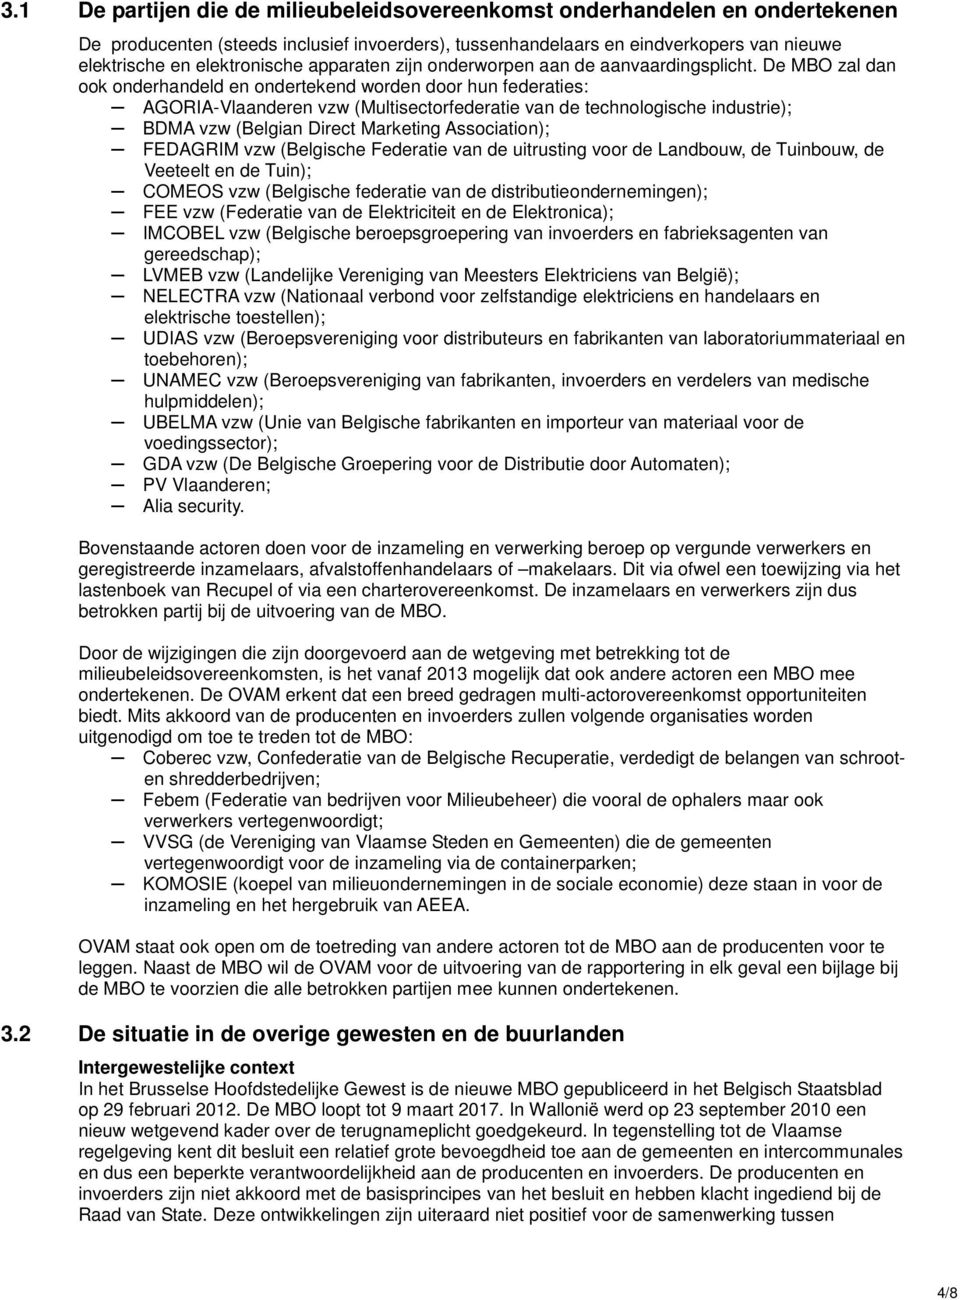 De MBO zal dan ook onderhandeld en ondertekend worden door hun federaties: AGORIA-Vlaanderen vzw (Multisectorfederatie van de technologische industrie); BDMA vzw (Belgian Direct Marketing